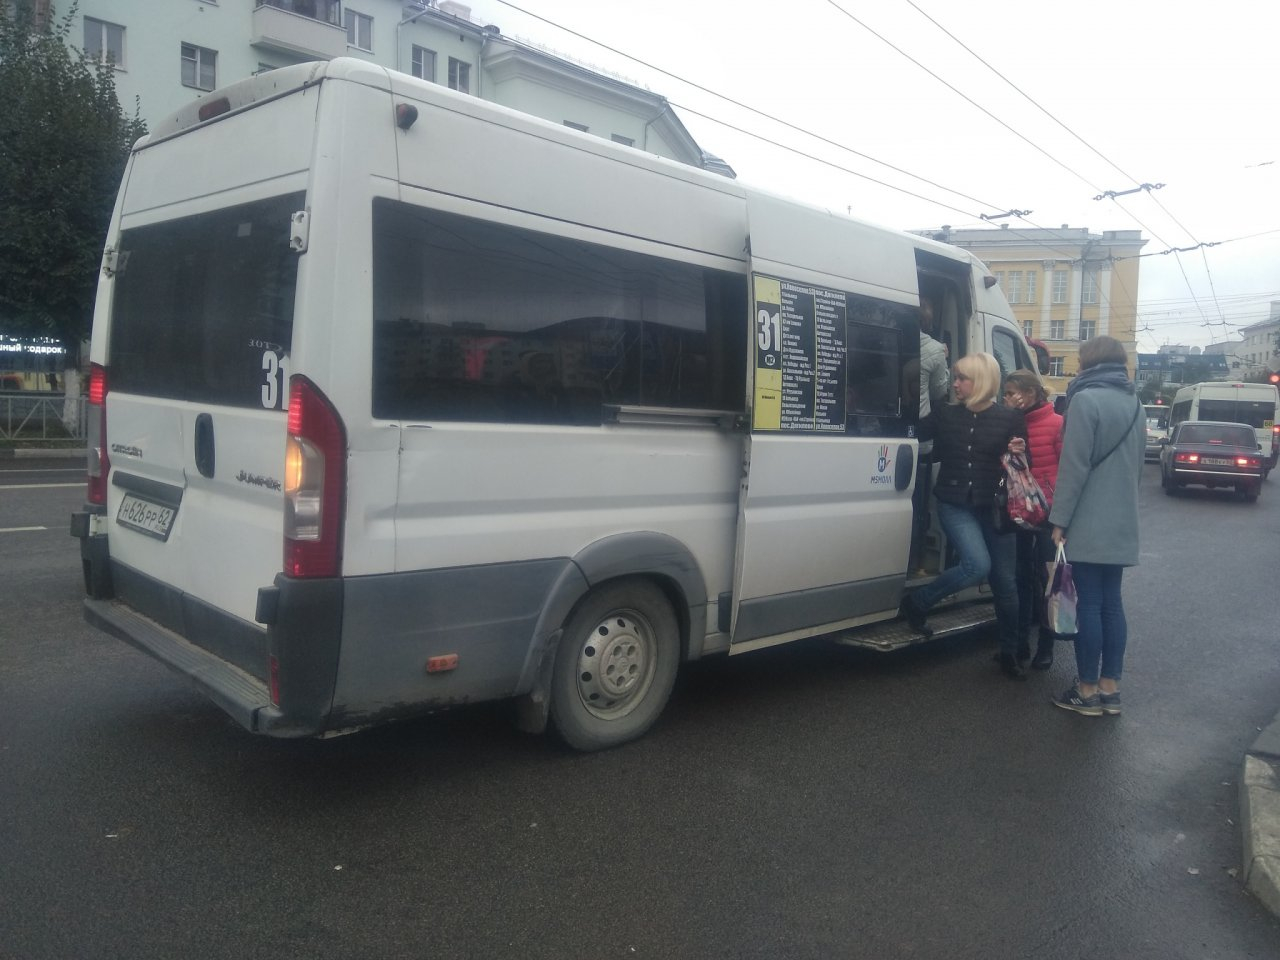 Мэрия: маршрутки №31 появлялись на улицах Рязани нелегально